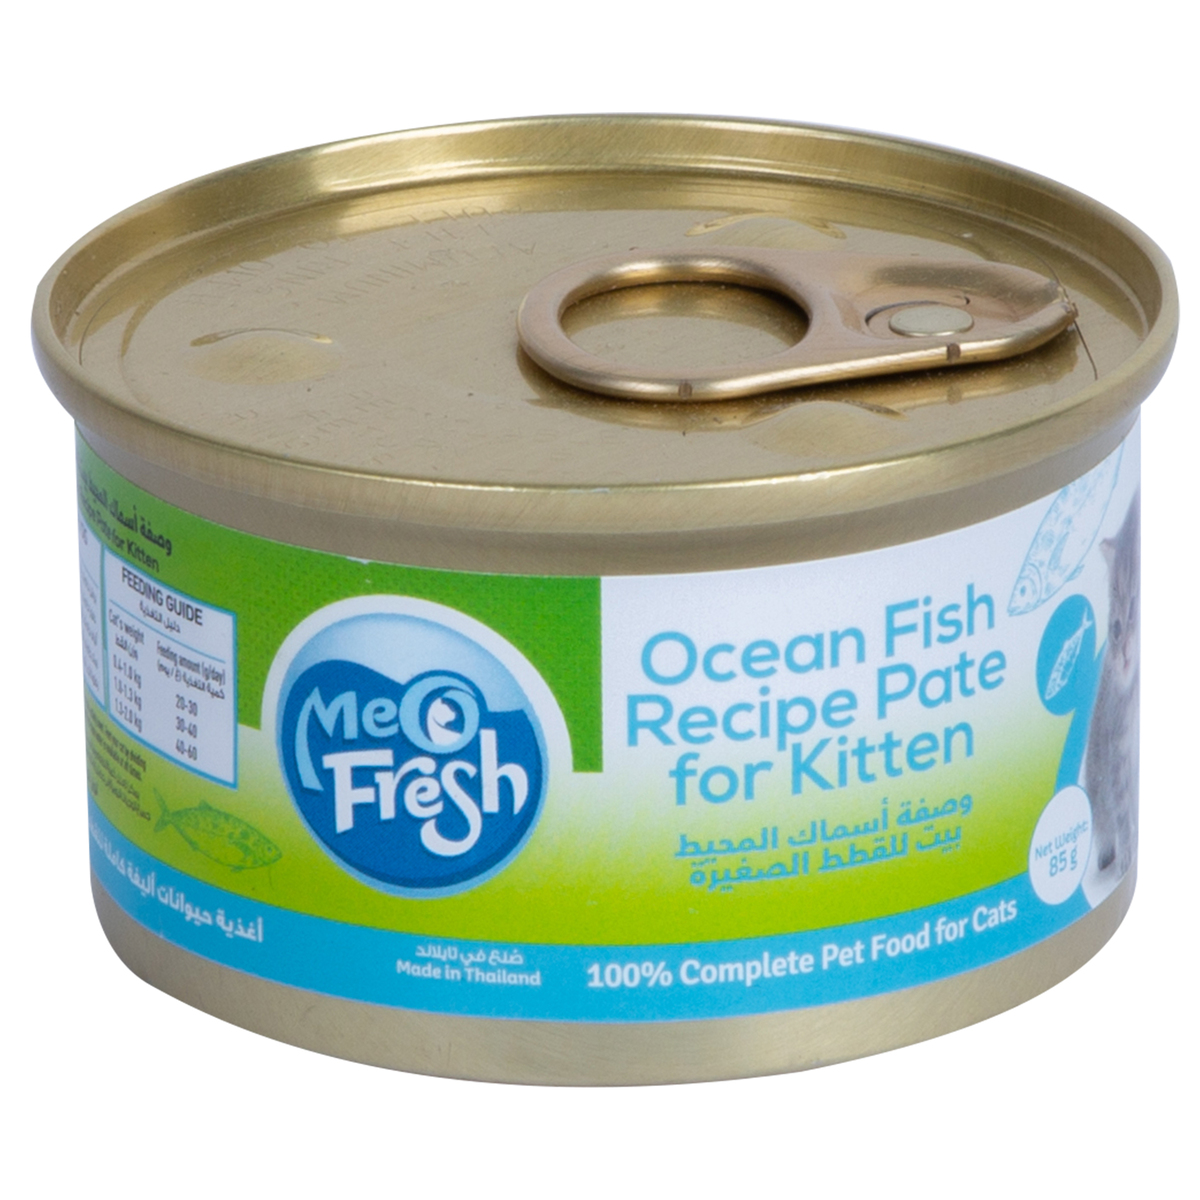 ميو فريش وصفة أسماك المحيط للقطط الصغيرة 85 جم